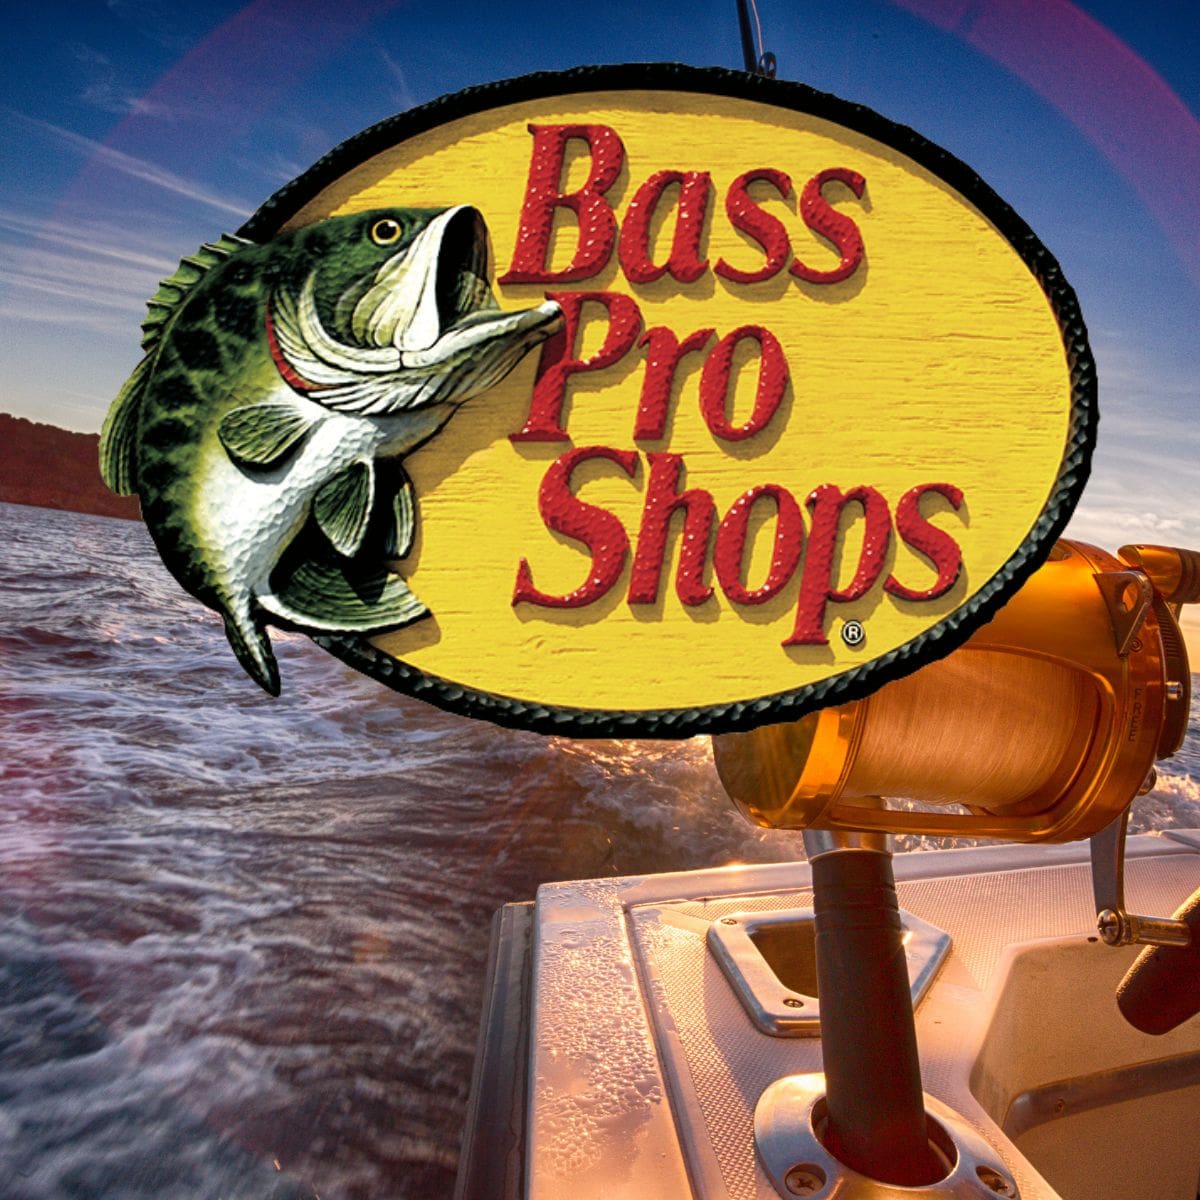 Bass Pro Shops' Outdoor World Irvine